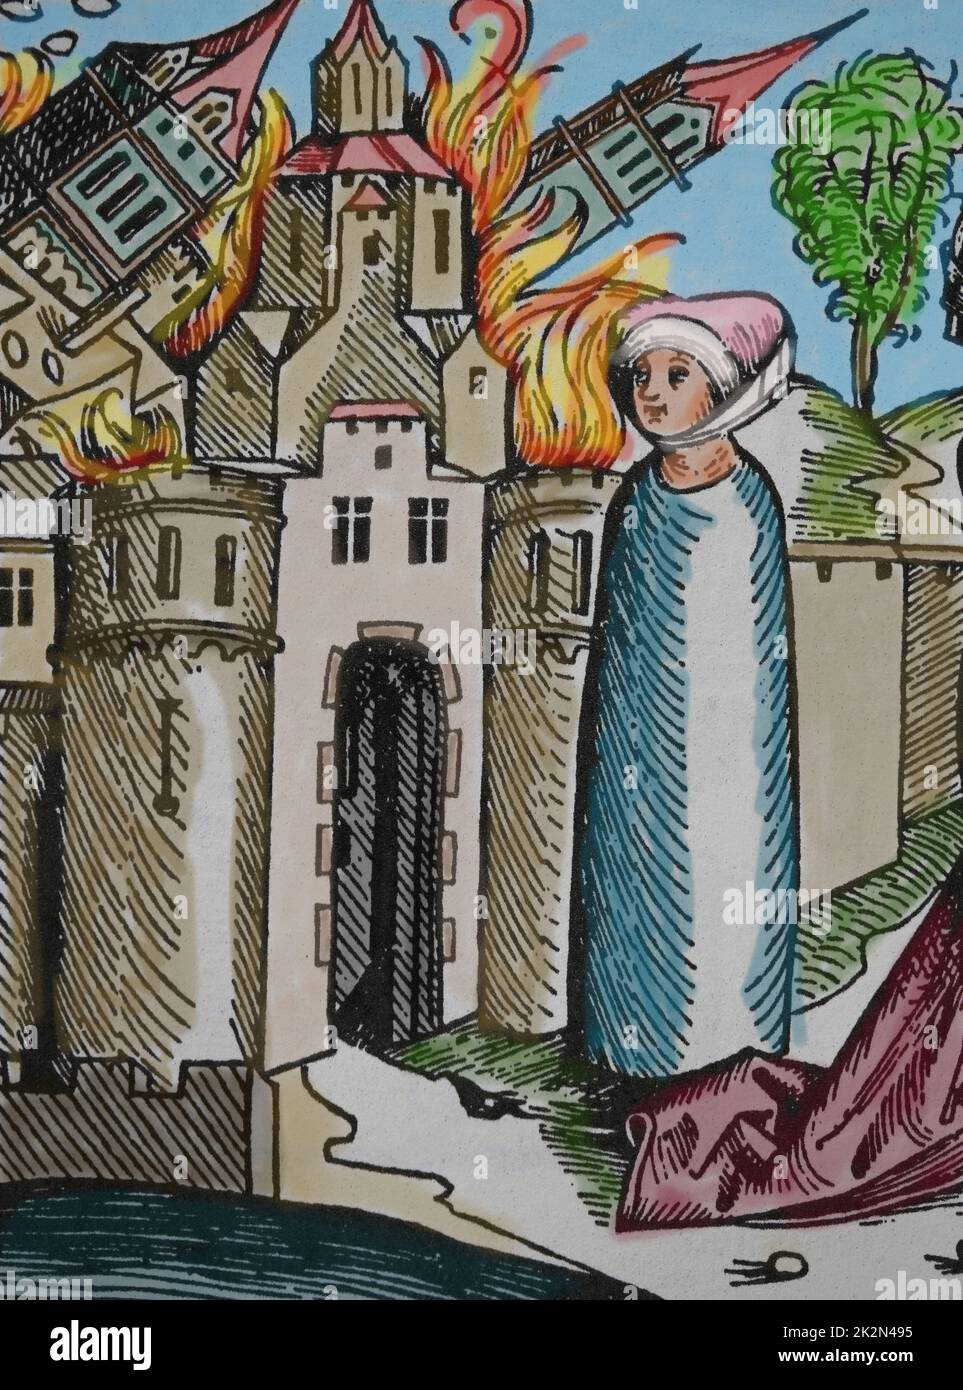 Destruktion von Sodom und Gomorra. Lots Frau, die Gott ungehorsam ist, wird zu einer Säule aus Salz. Nürnberger Chronik, 1493. Stockfoto